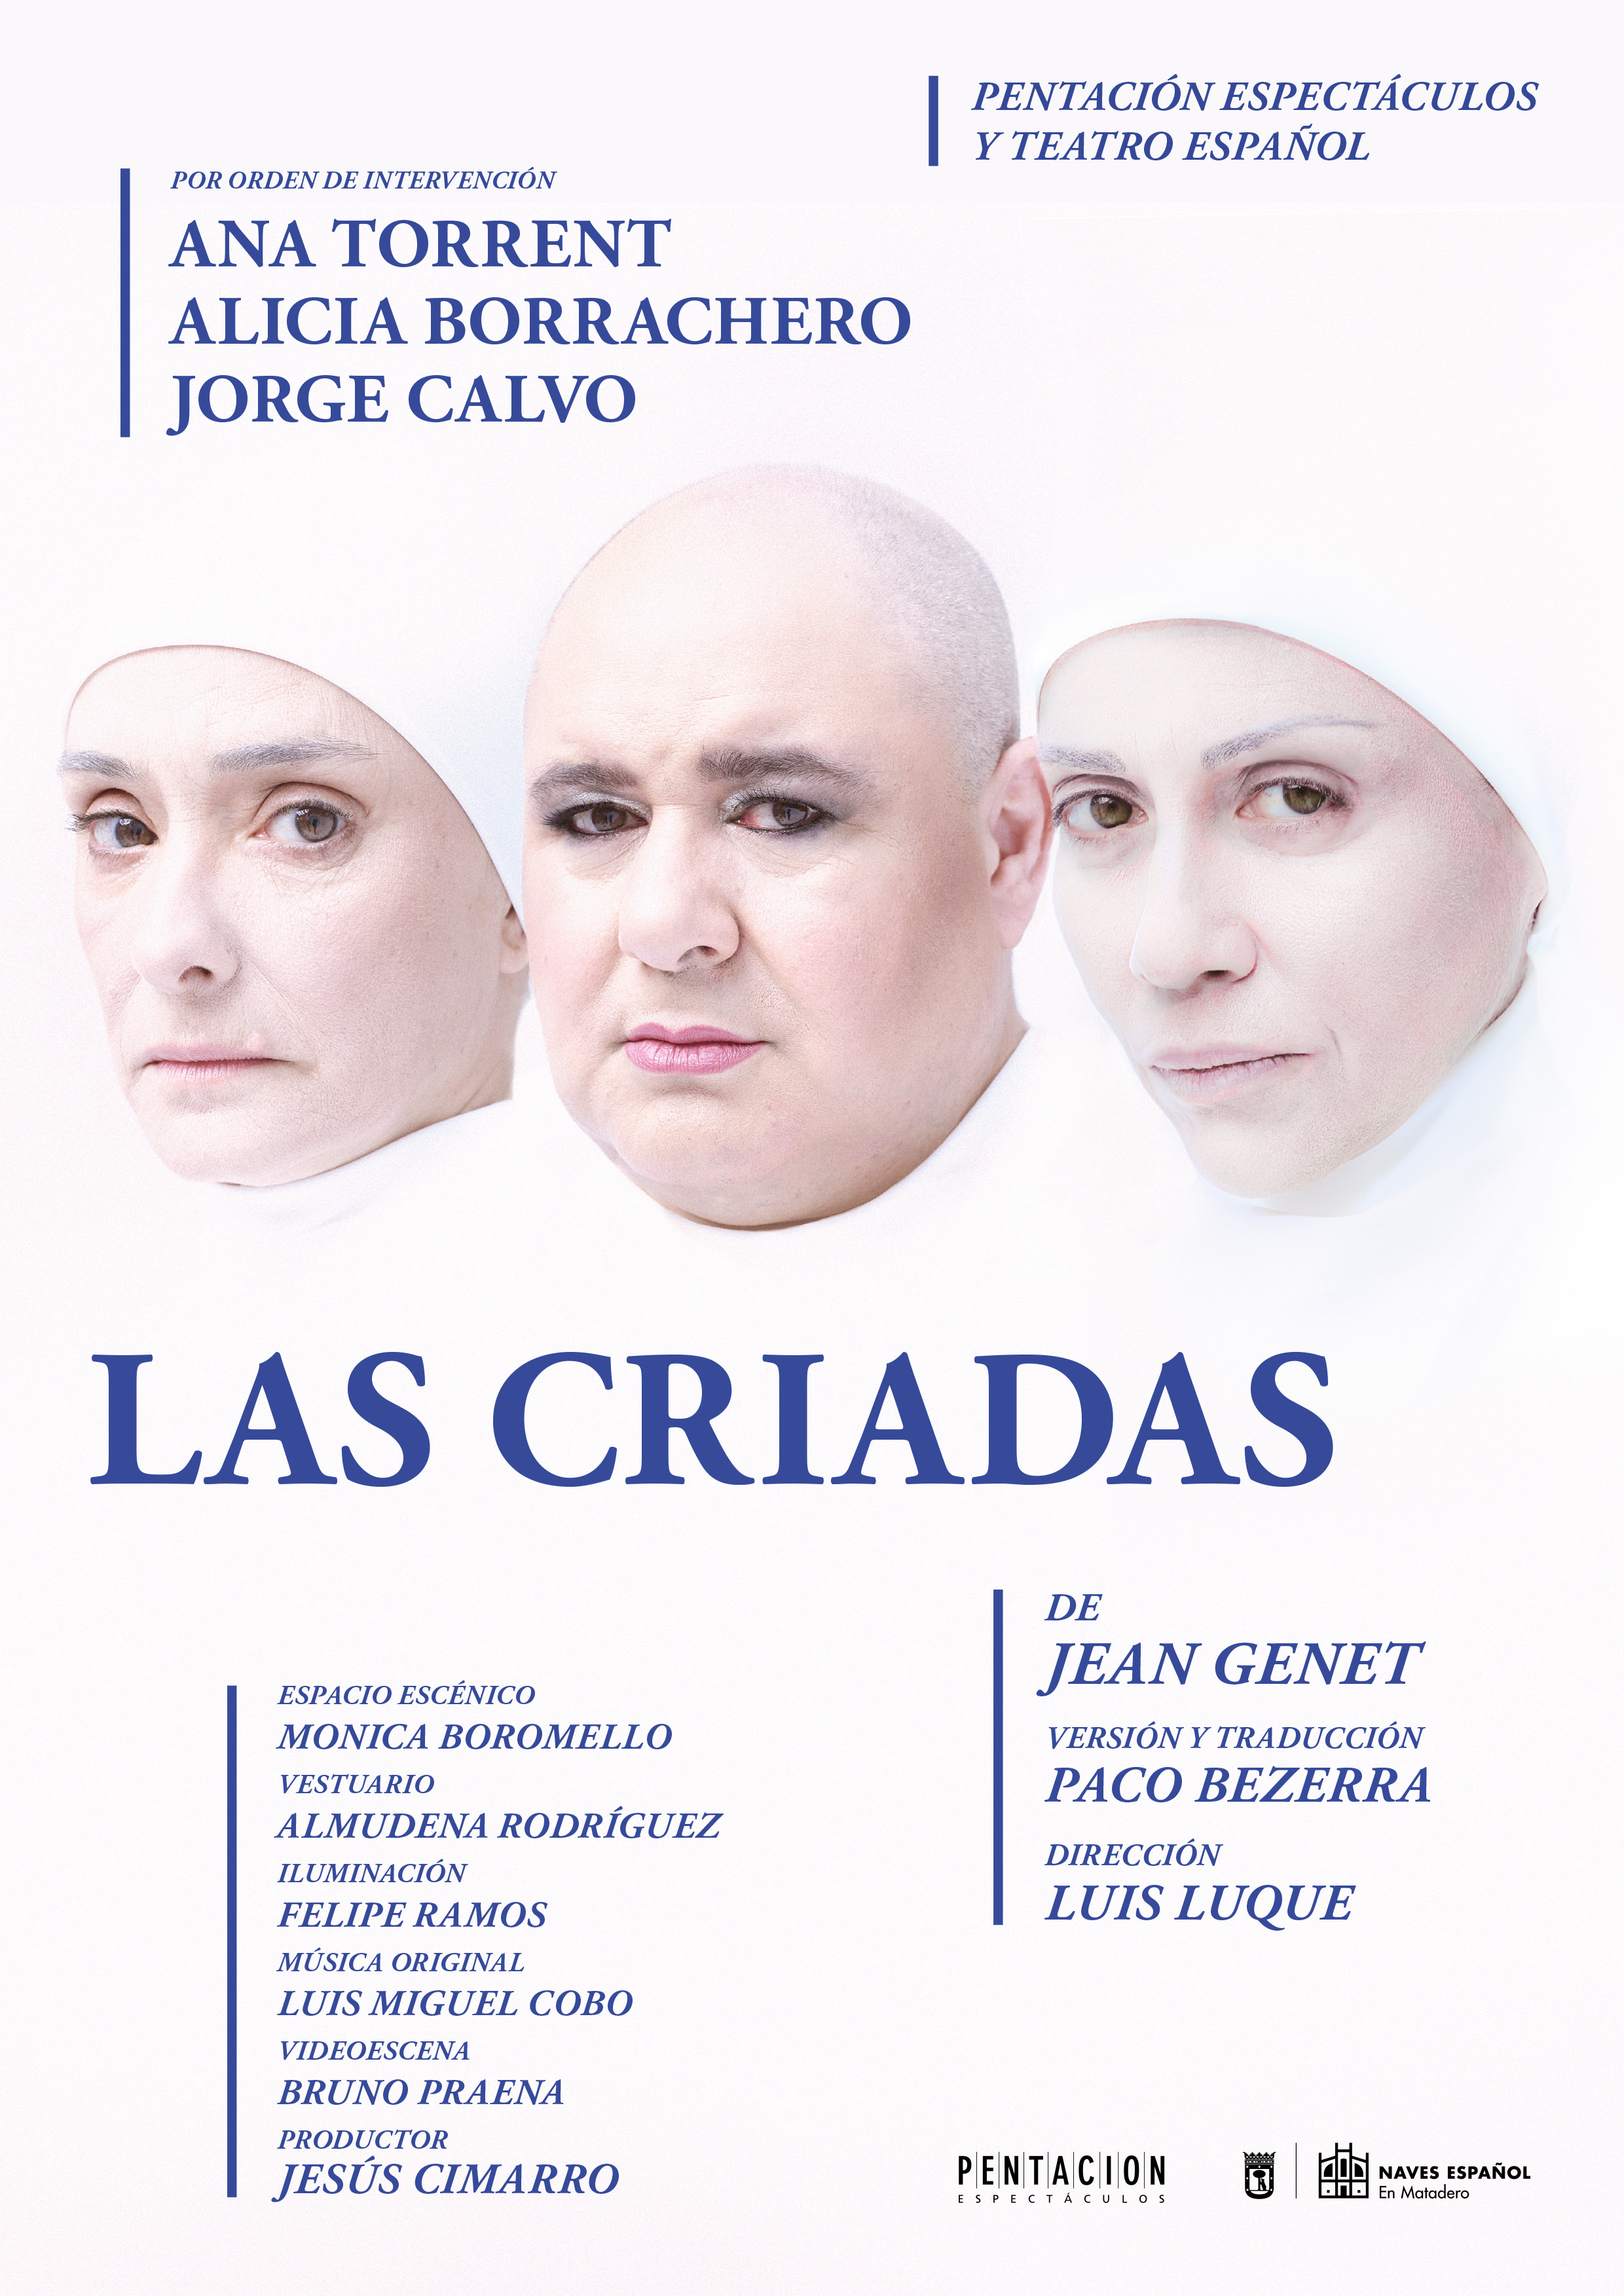 Ana Torrent, Alicia Borrachero i Jorge Calvo protagonitzen ‘Las Criadas’ de Jean Genet